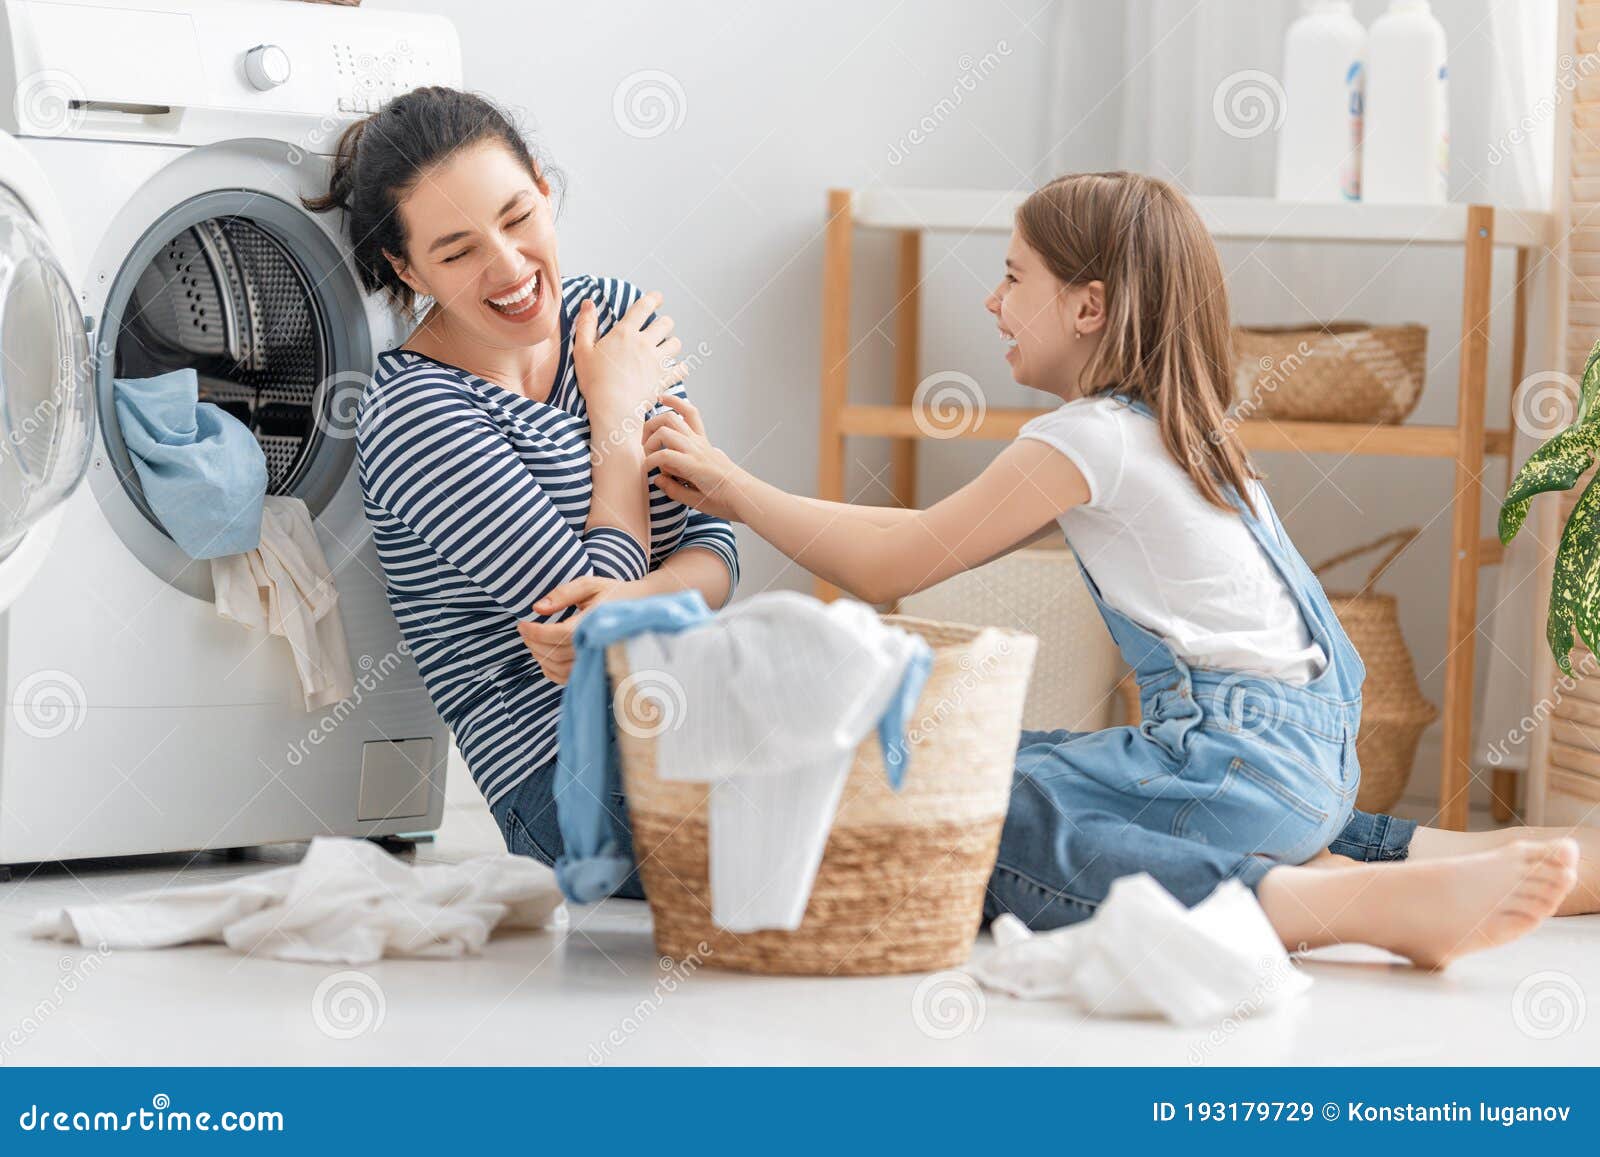 妇女在洗衣房洗衣服图片下载 - 觅知网